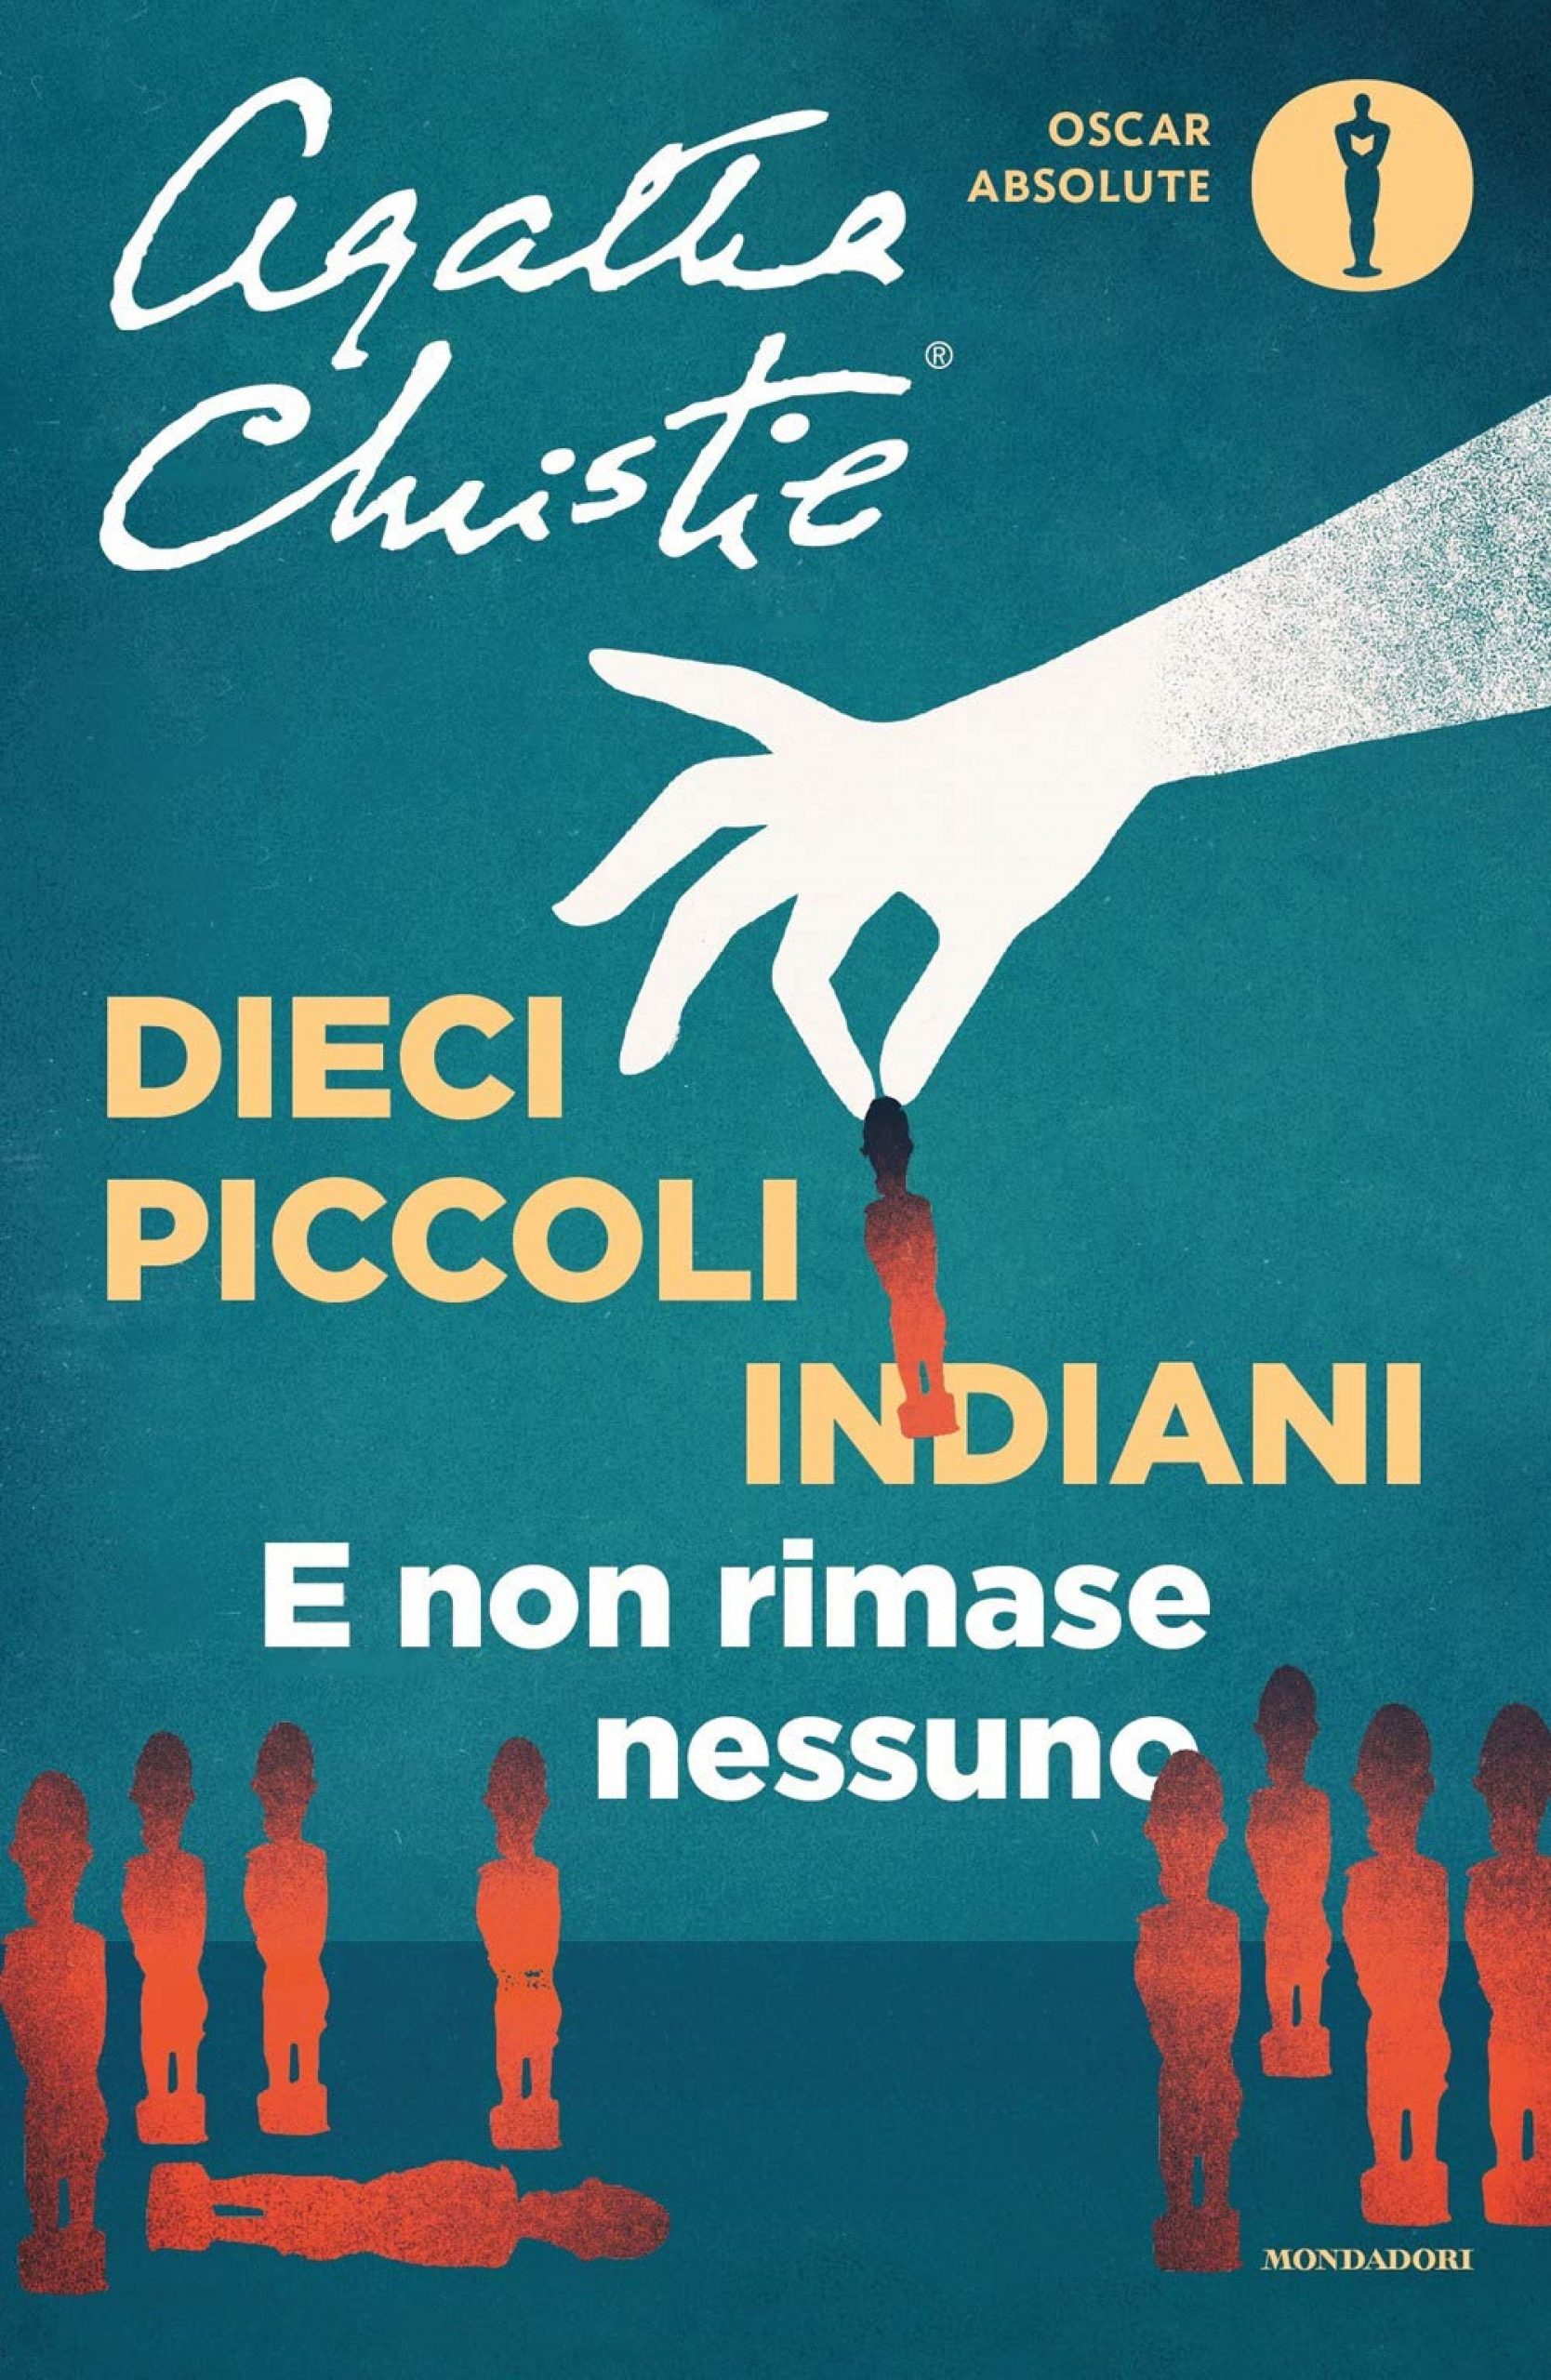 Dieci piccoli indiani - Agatha Christie - Scuolafilosofica